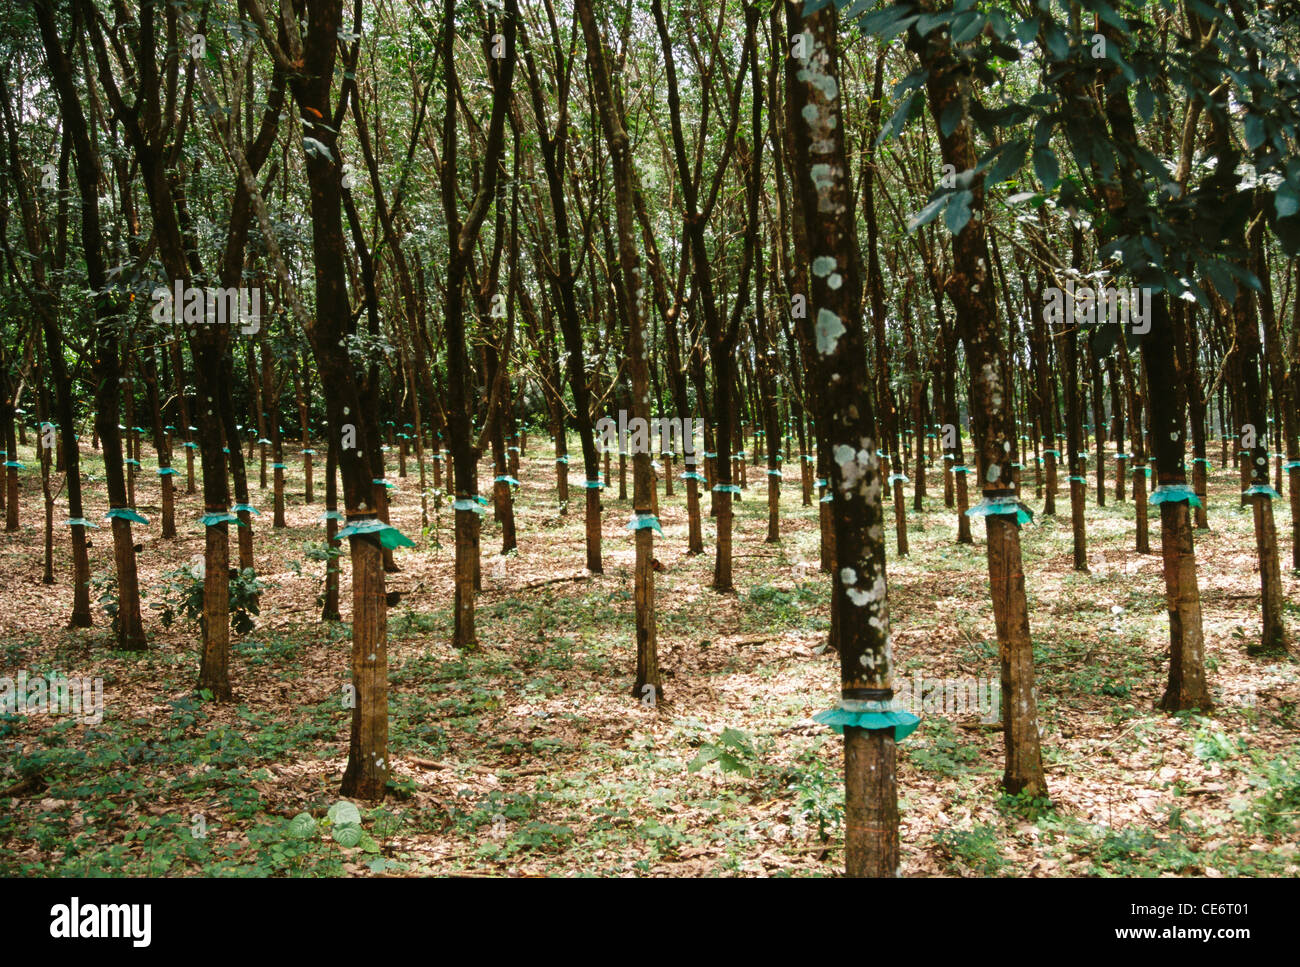 Plantation d'arbres en caoutchouc ; kerala ; inde ; asie Banque D'Images